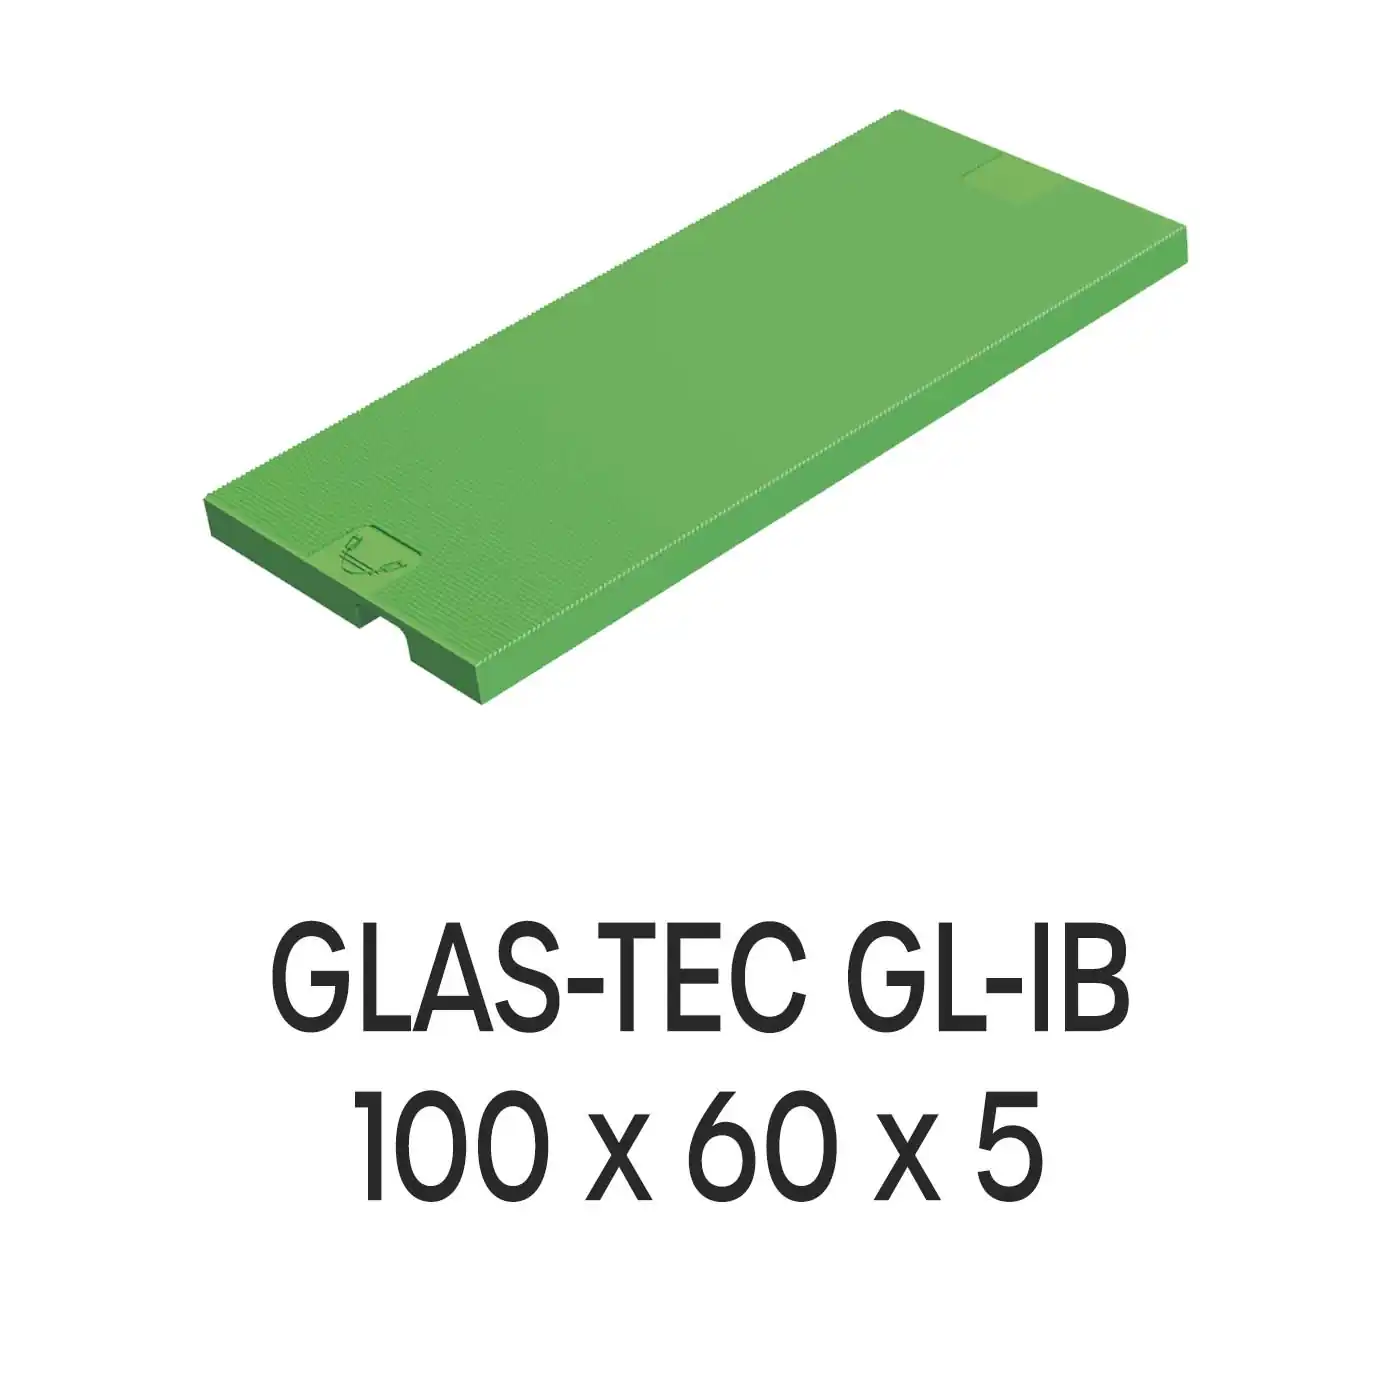 Roto Verglasungsklotz GLAS-TEC GL-IB, 100 x 60 x 5 mm, schwarz, 500 Stück